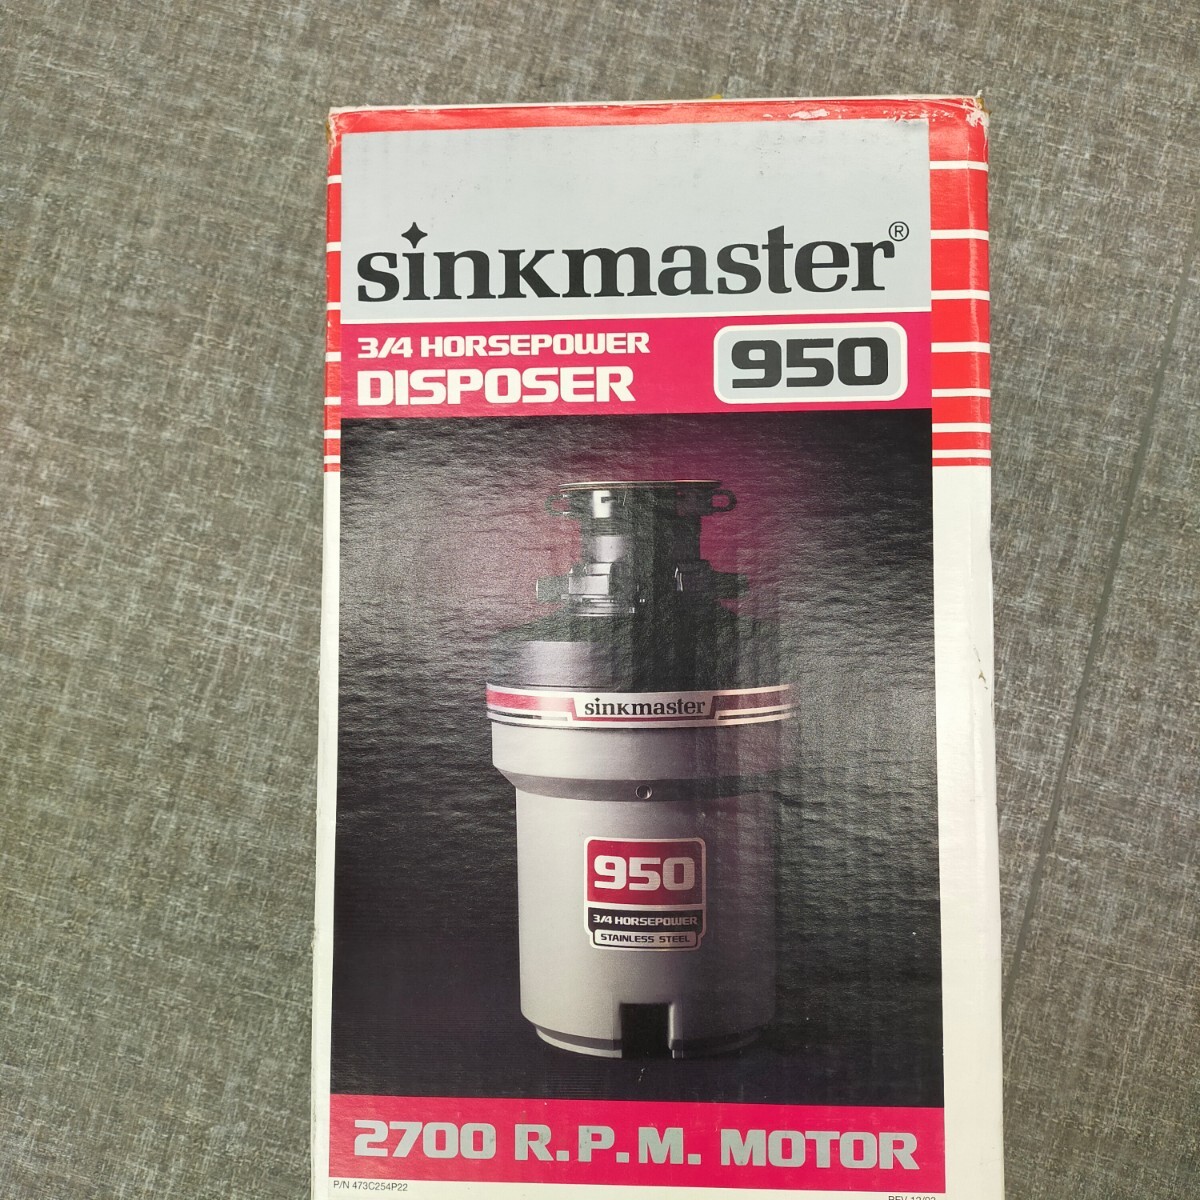 す1312 ディスポーザー SINKMASTER シンクマスター DISPOSER 950 生ゴミ処理機の画像3